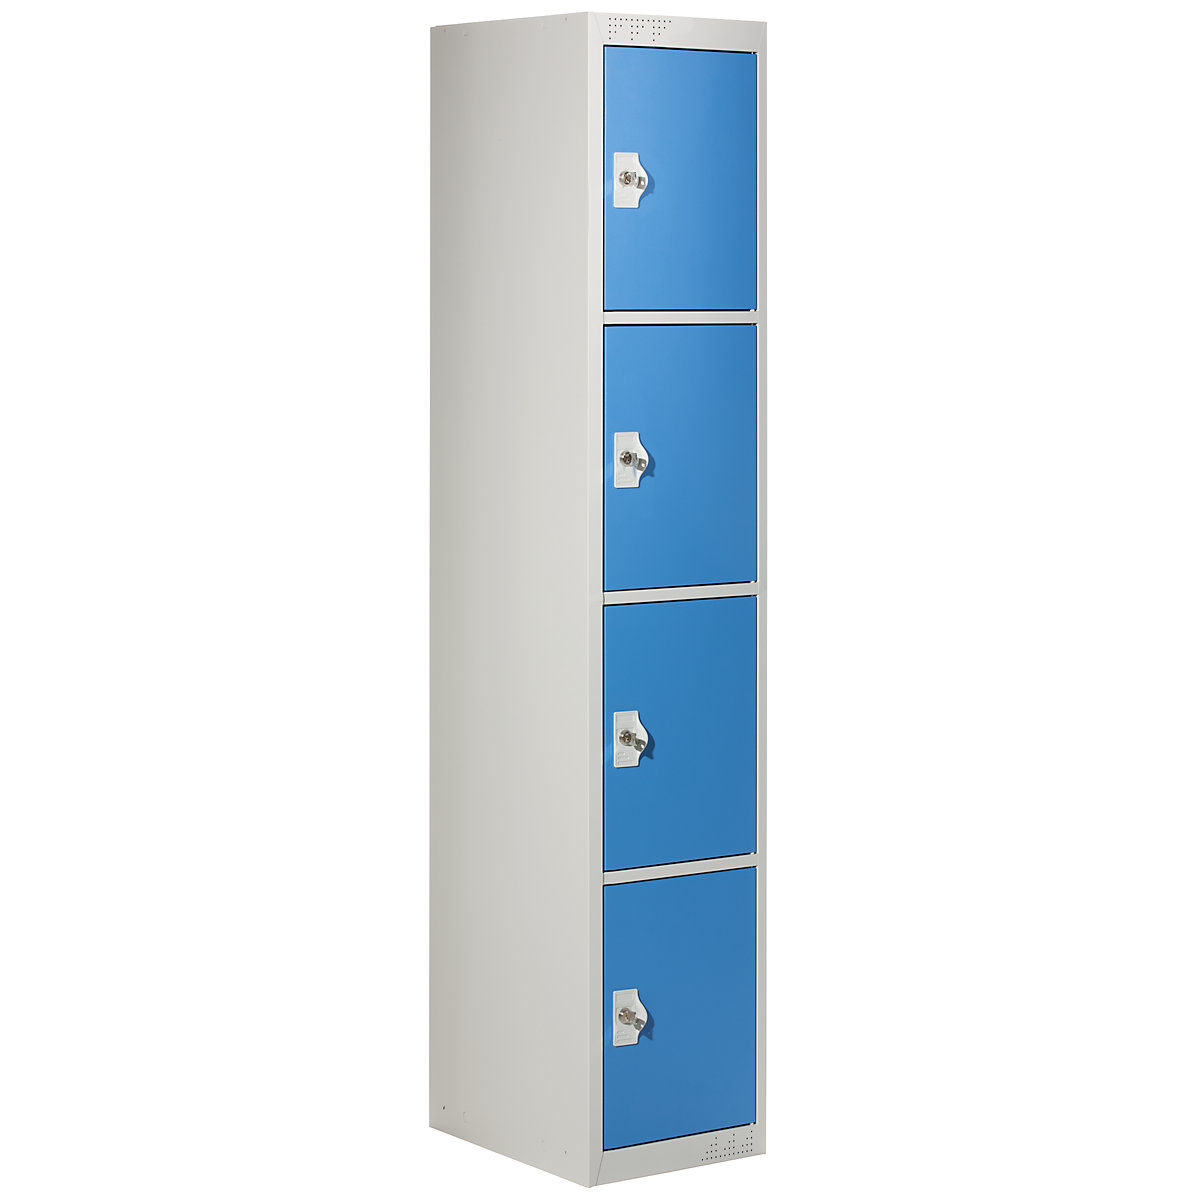 Vestiaire multicases avec 4 casiers verrouillables, h x l x p 1800 x 300 x 500 mm, gris clair / bleu clair, élément additionnel